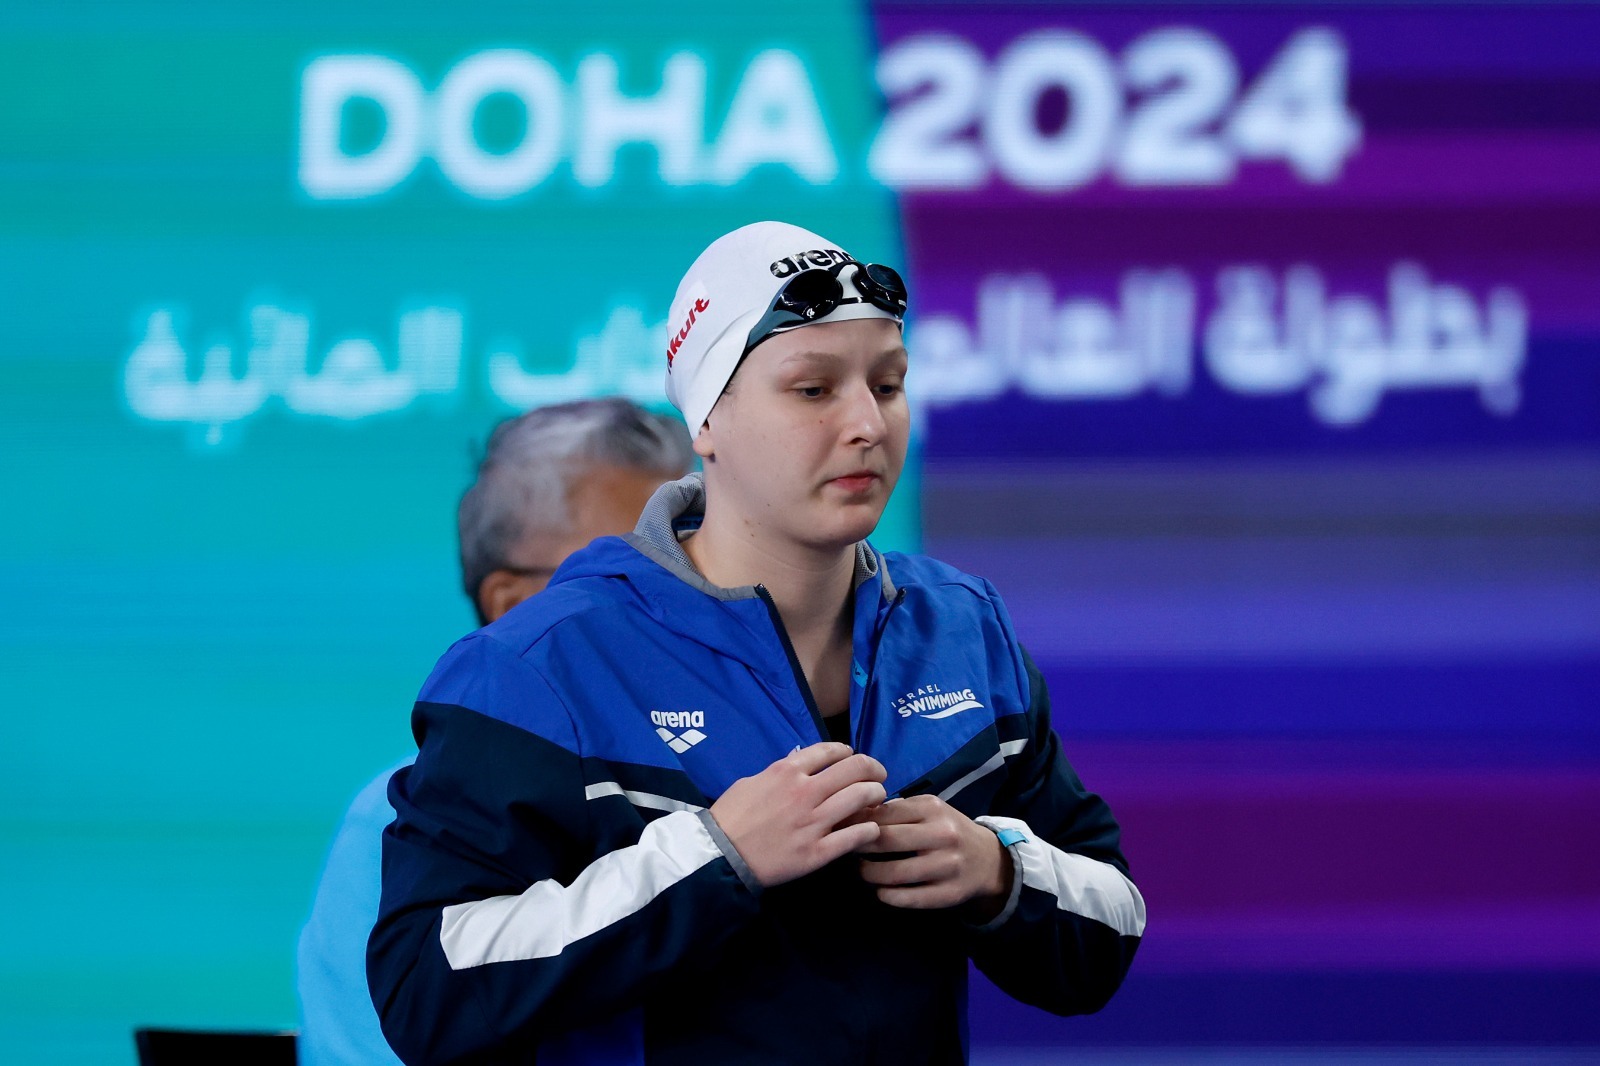 דריה גולובטי באליפות העולם בשחייה, בקטאר (צילום: סימונה קסטרווילארי, איגוד השחייה)